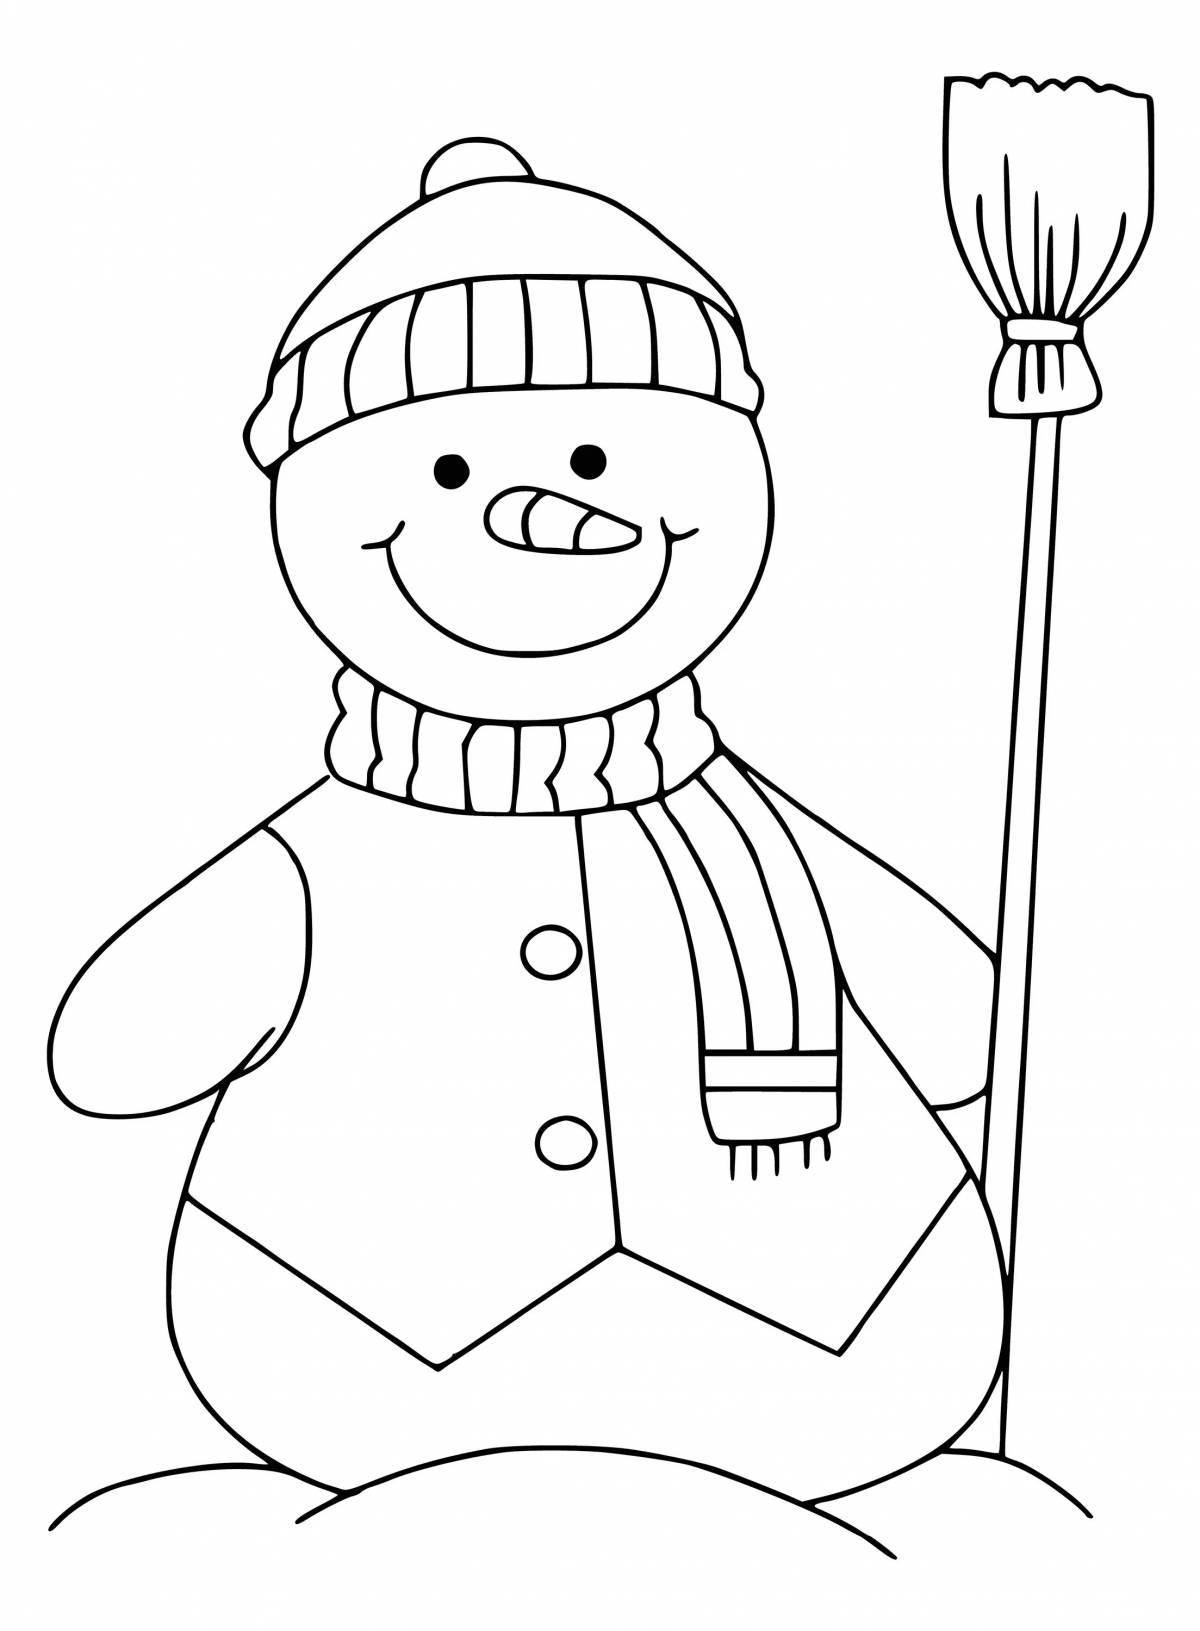 Веселая раскраска снеговик в шапке